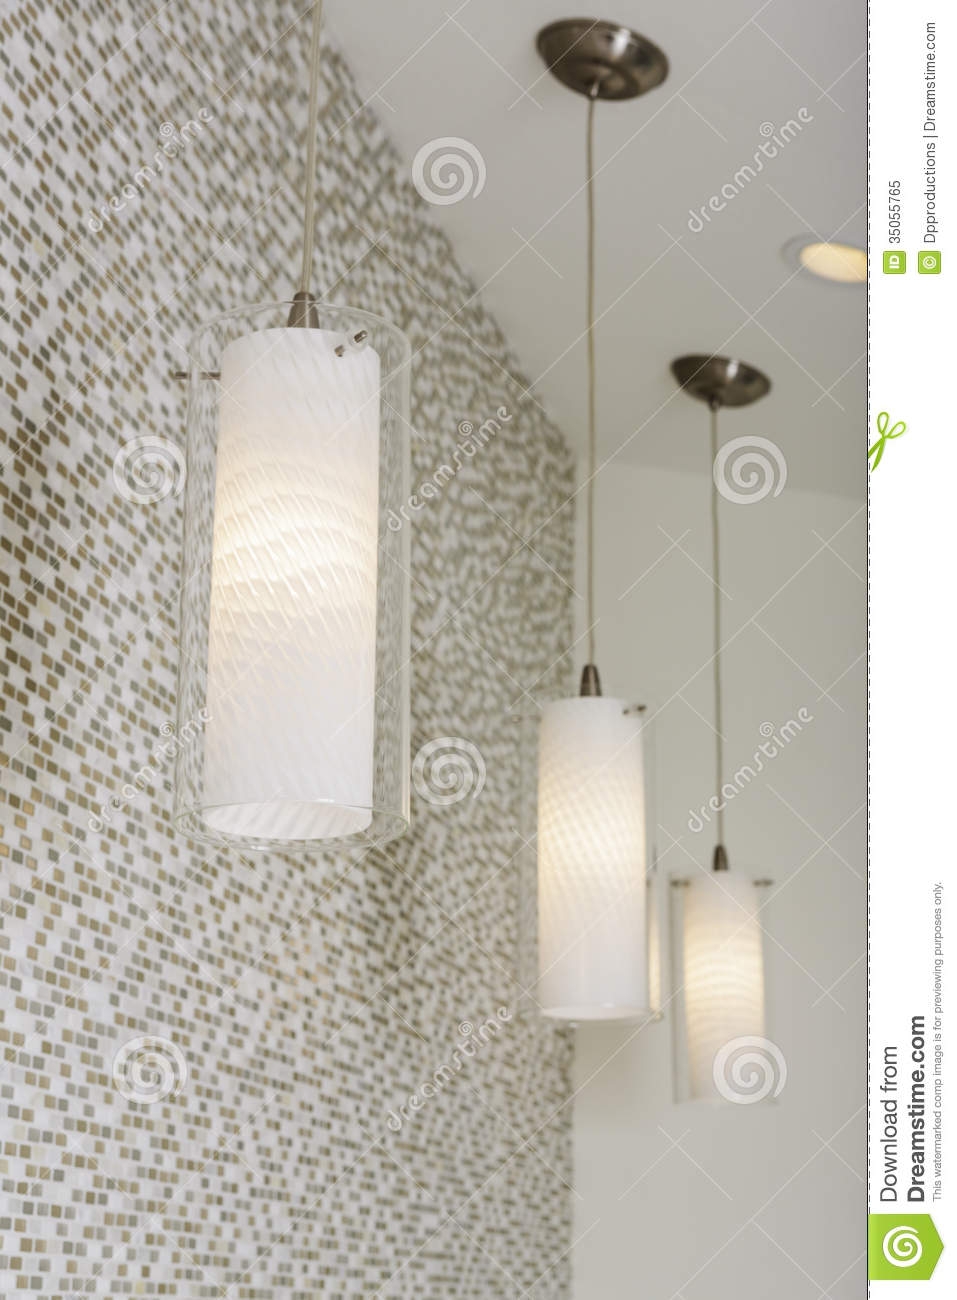 Ceiling Tile Lighting Fixtures